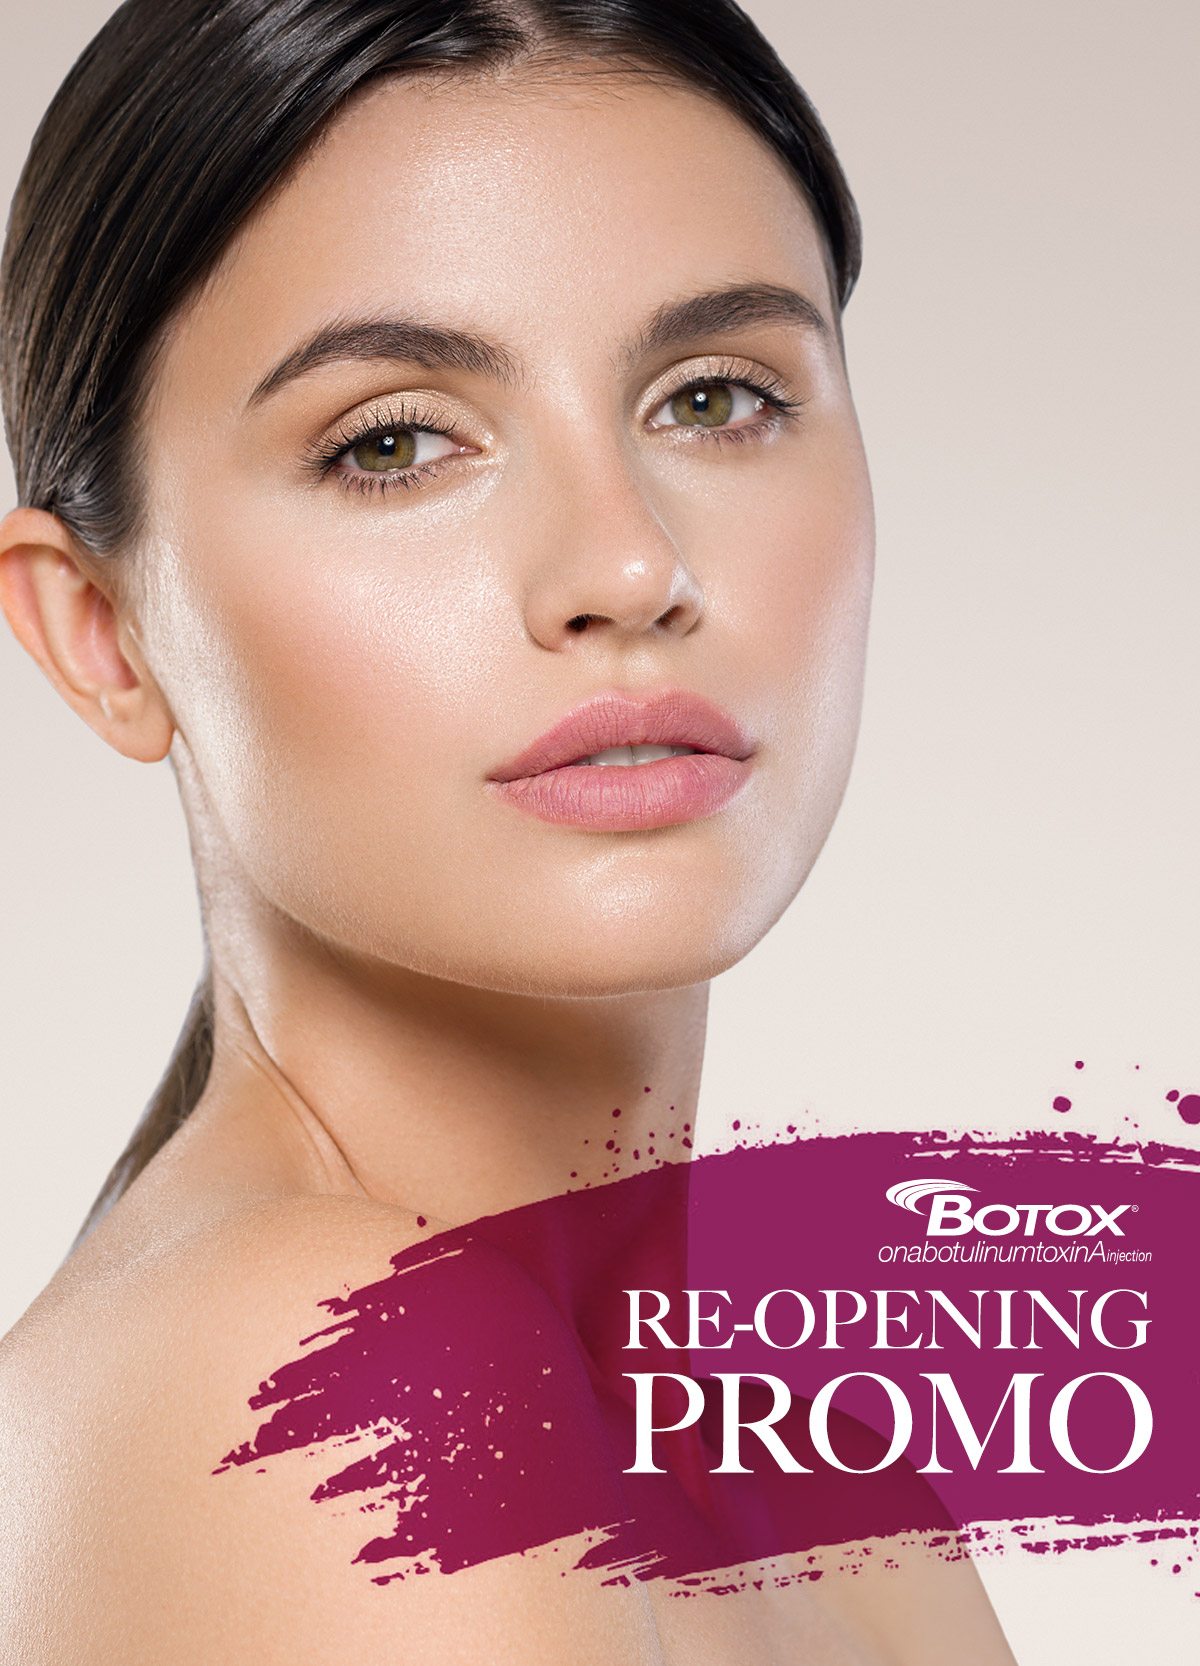 Botox Re-opening Promo